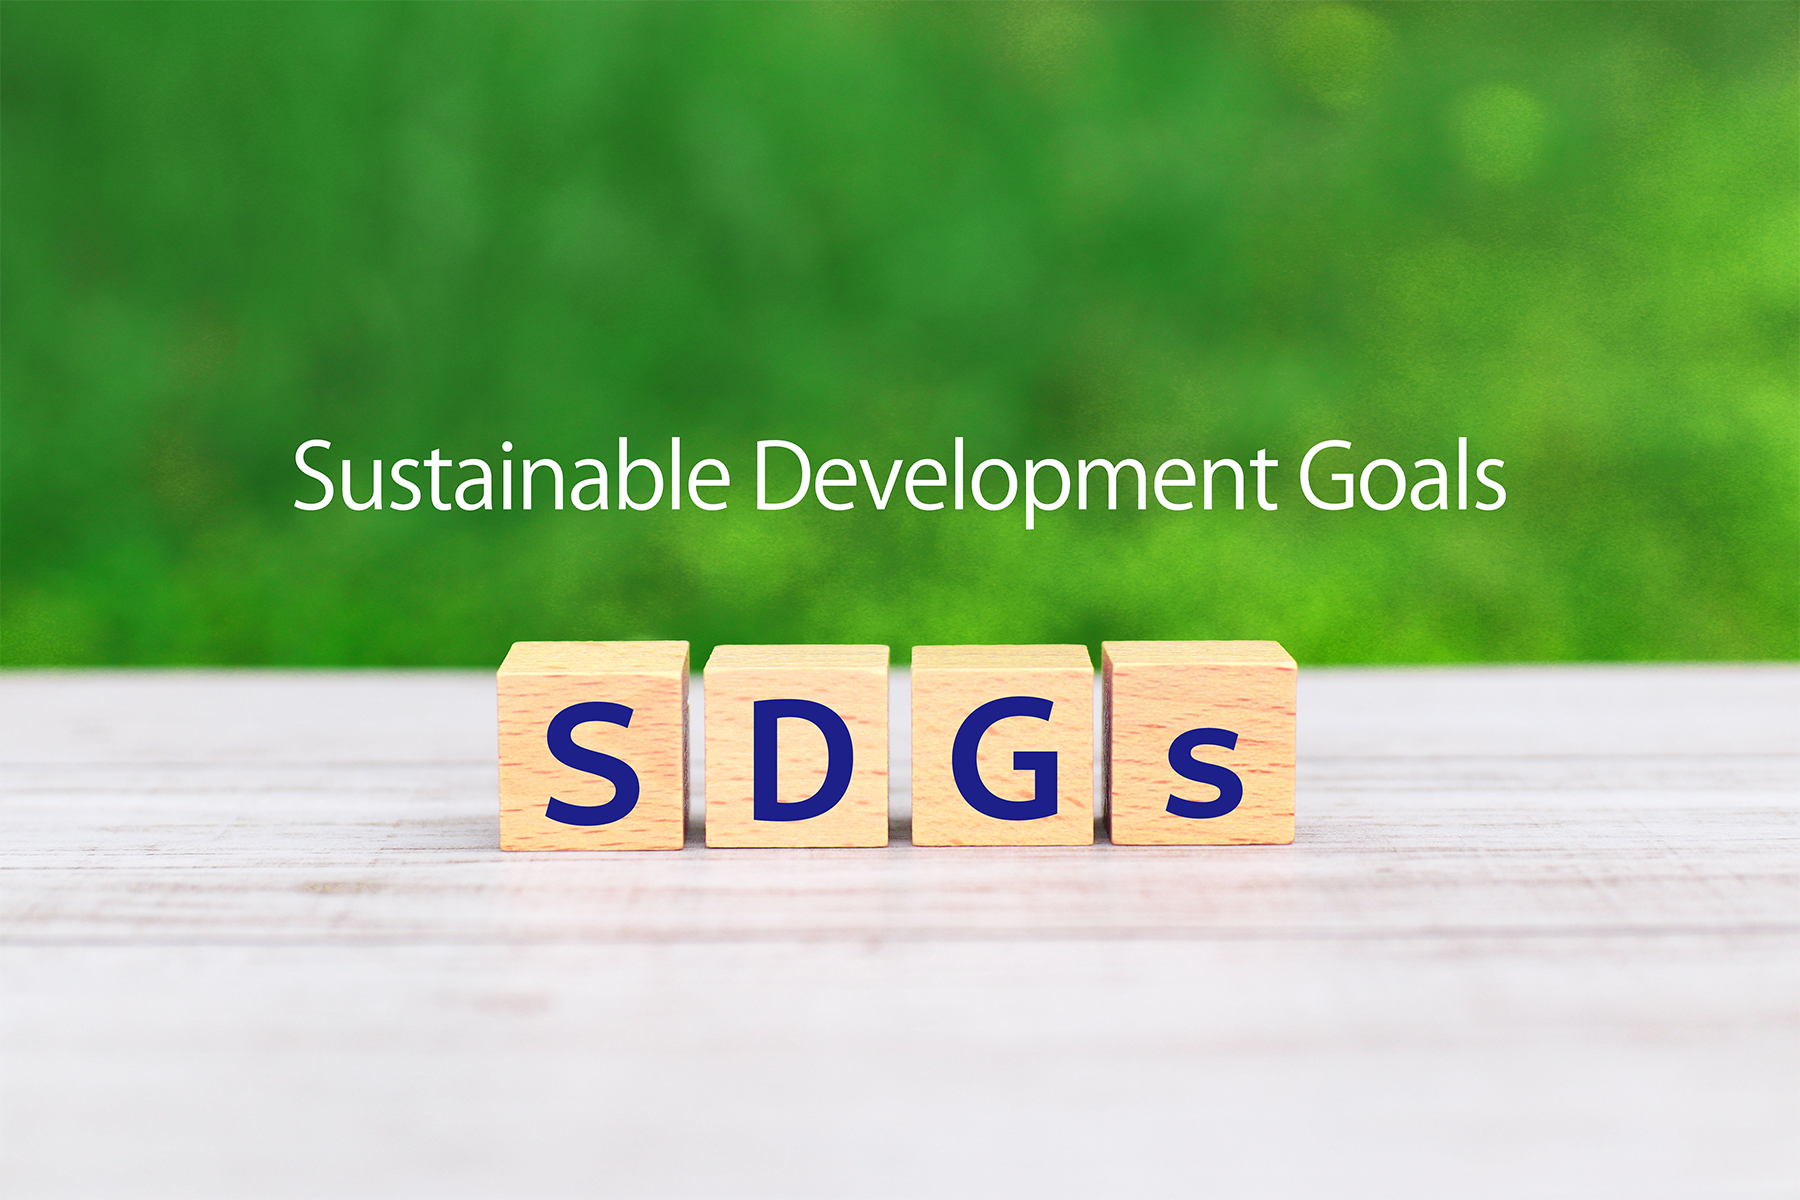 SDGsの文字が入ったイメージ画